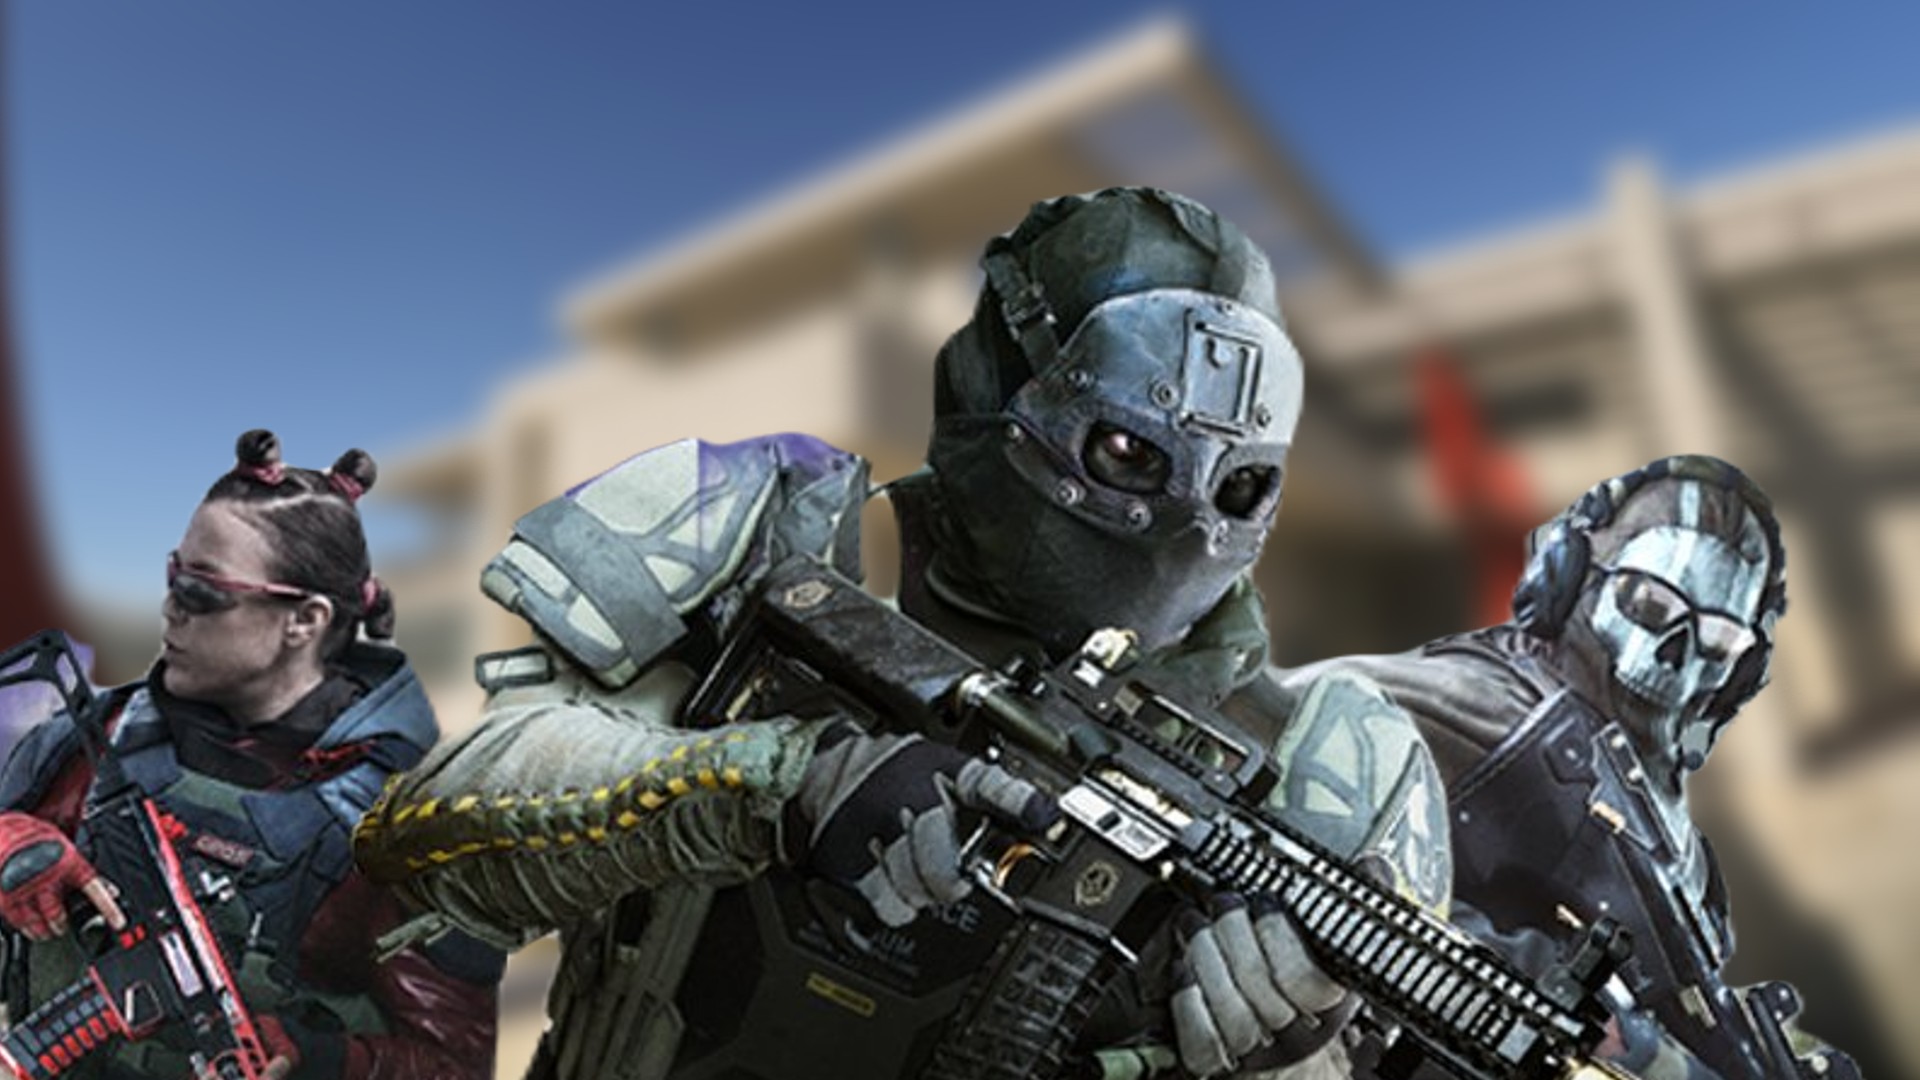 Modern Warfare 2 release time: When does Modern Warfare 2 release?